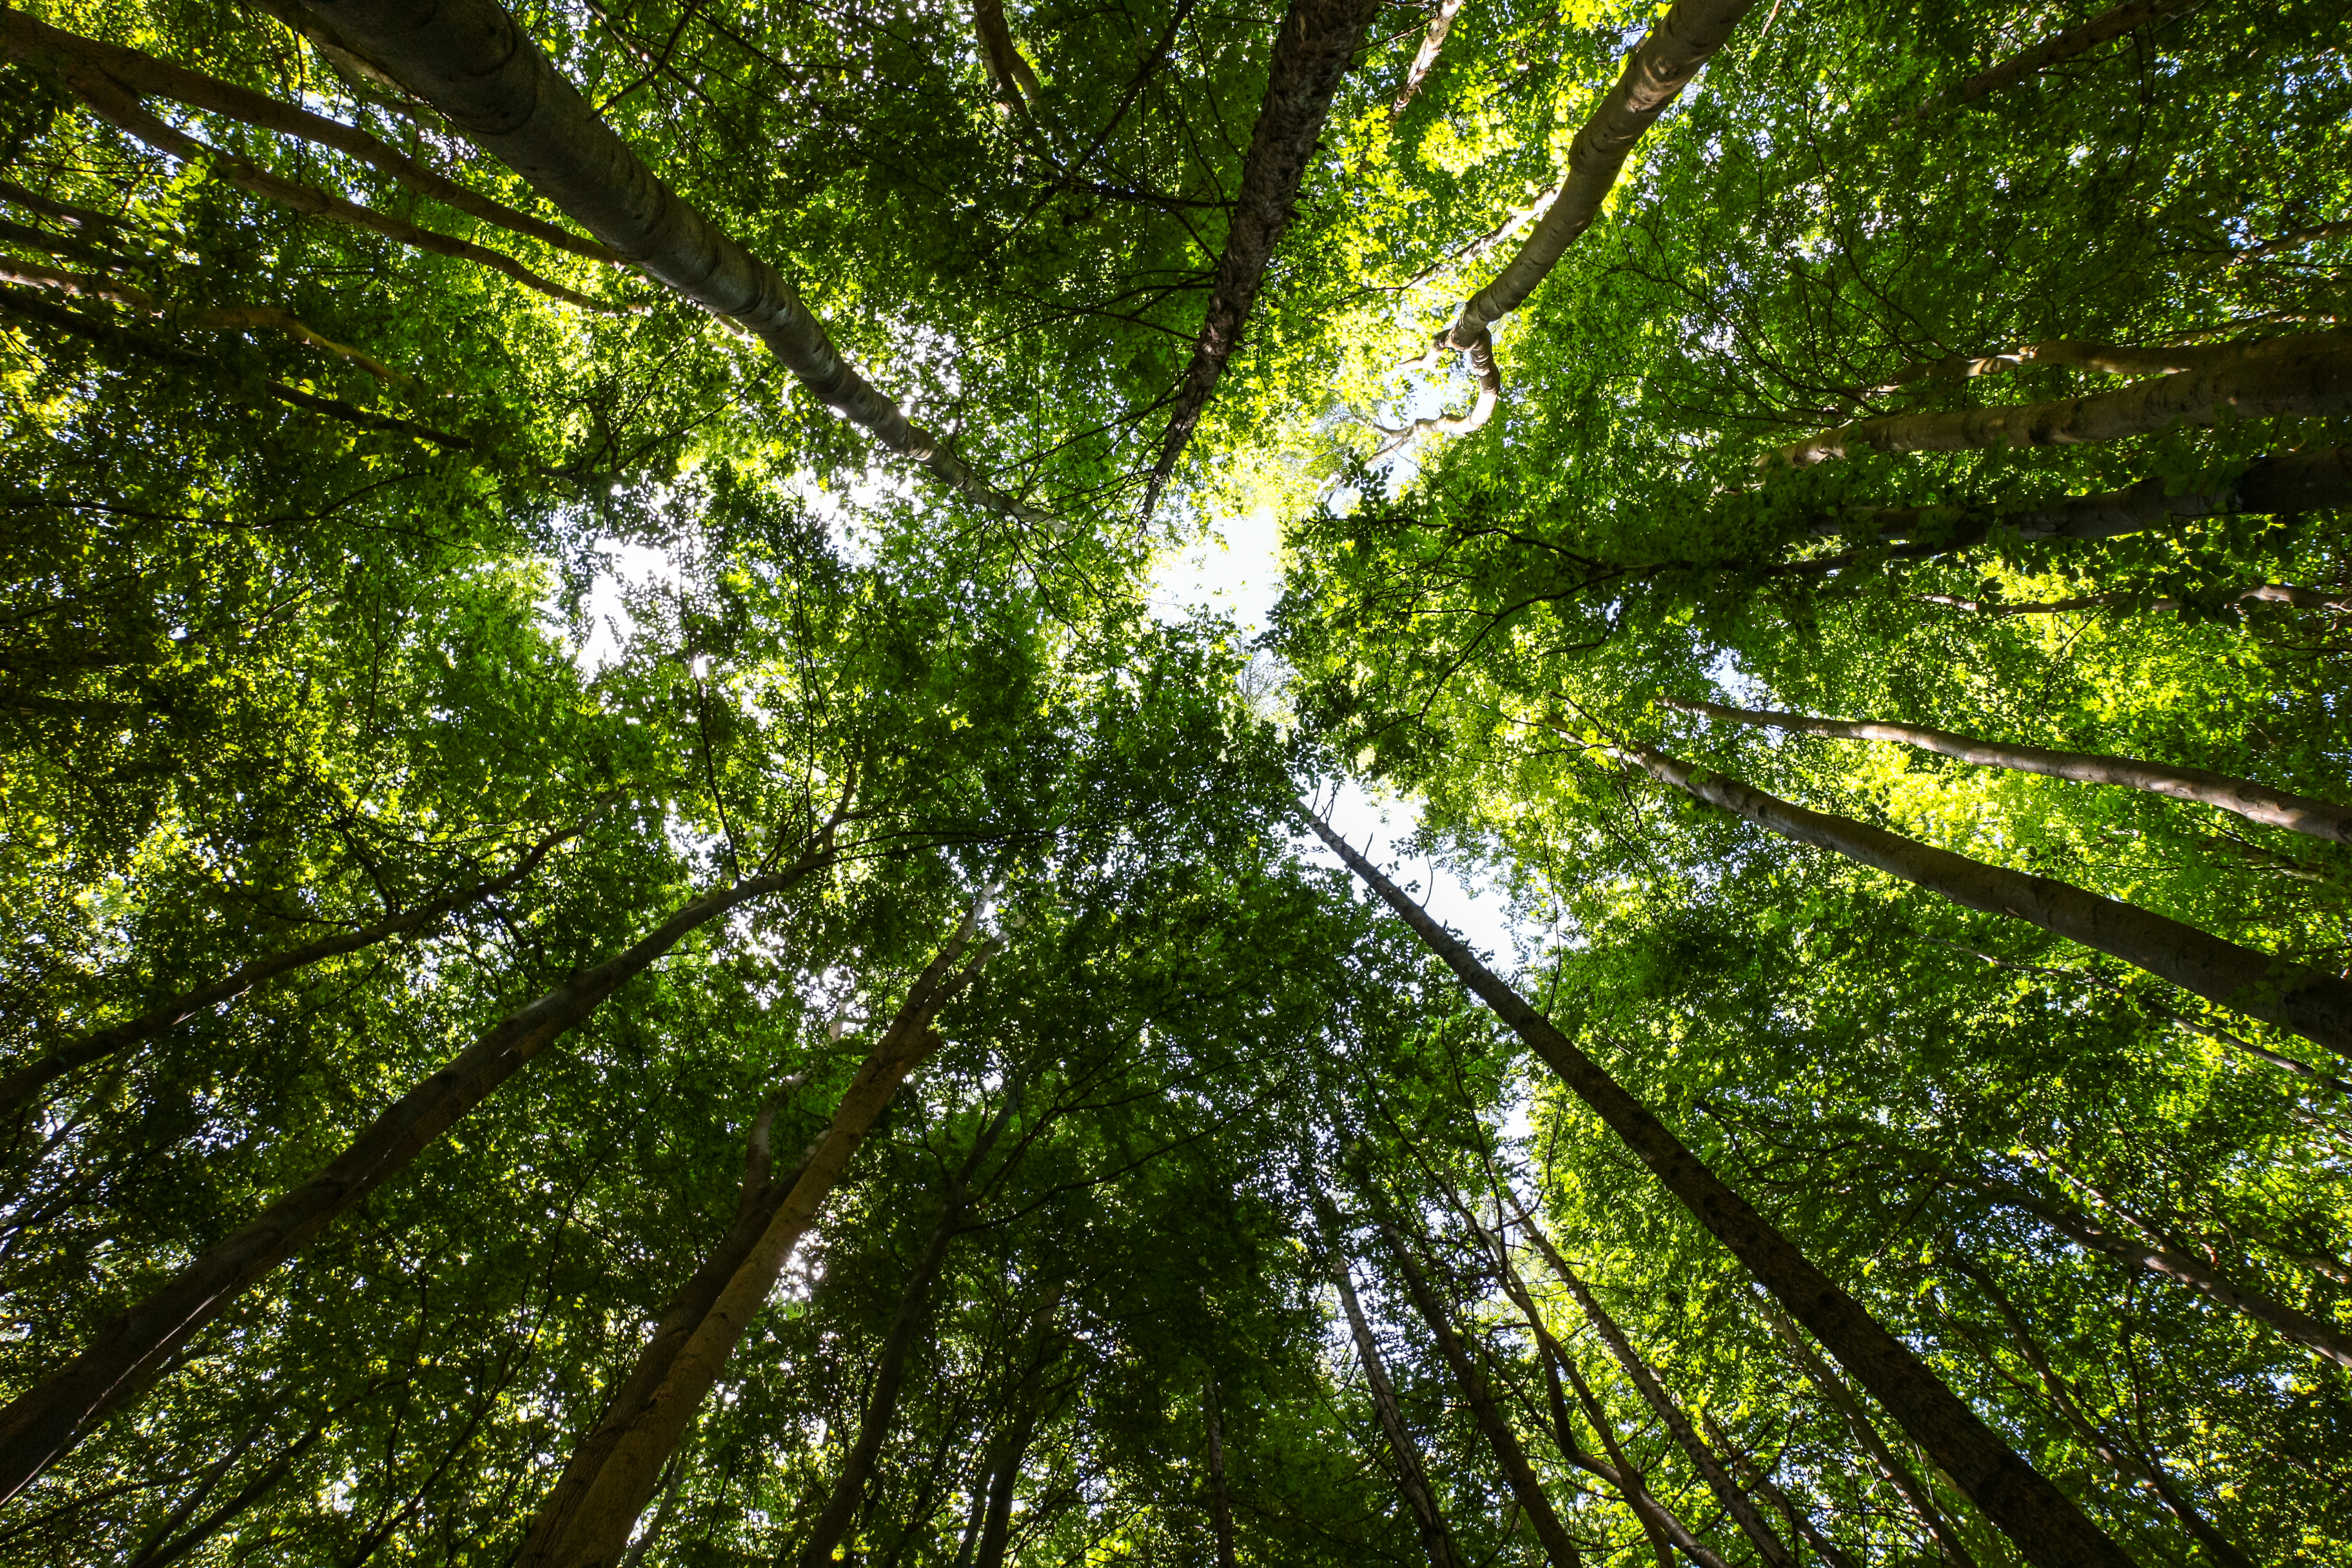 Relazione speciale 21/2021: Finanziamenti dell’UE per la biodiversità e la lotta contro i cambiamenti climatici nelle foreste dell’UE: risultati positivi ma limitati